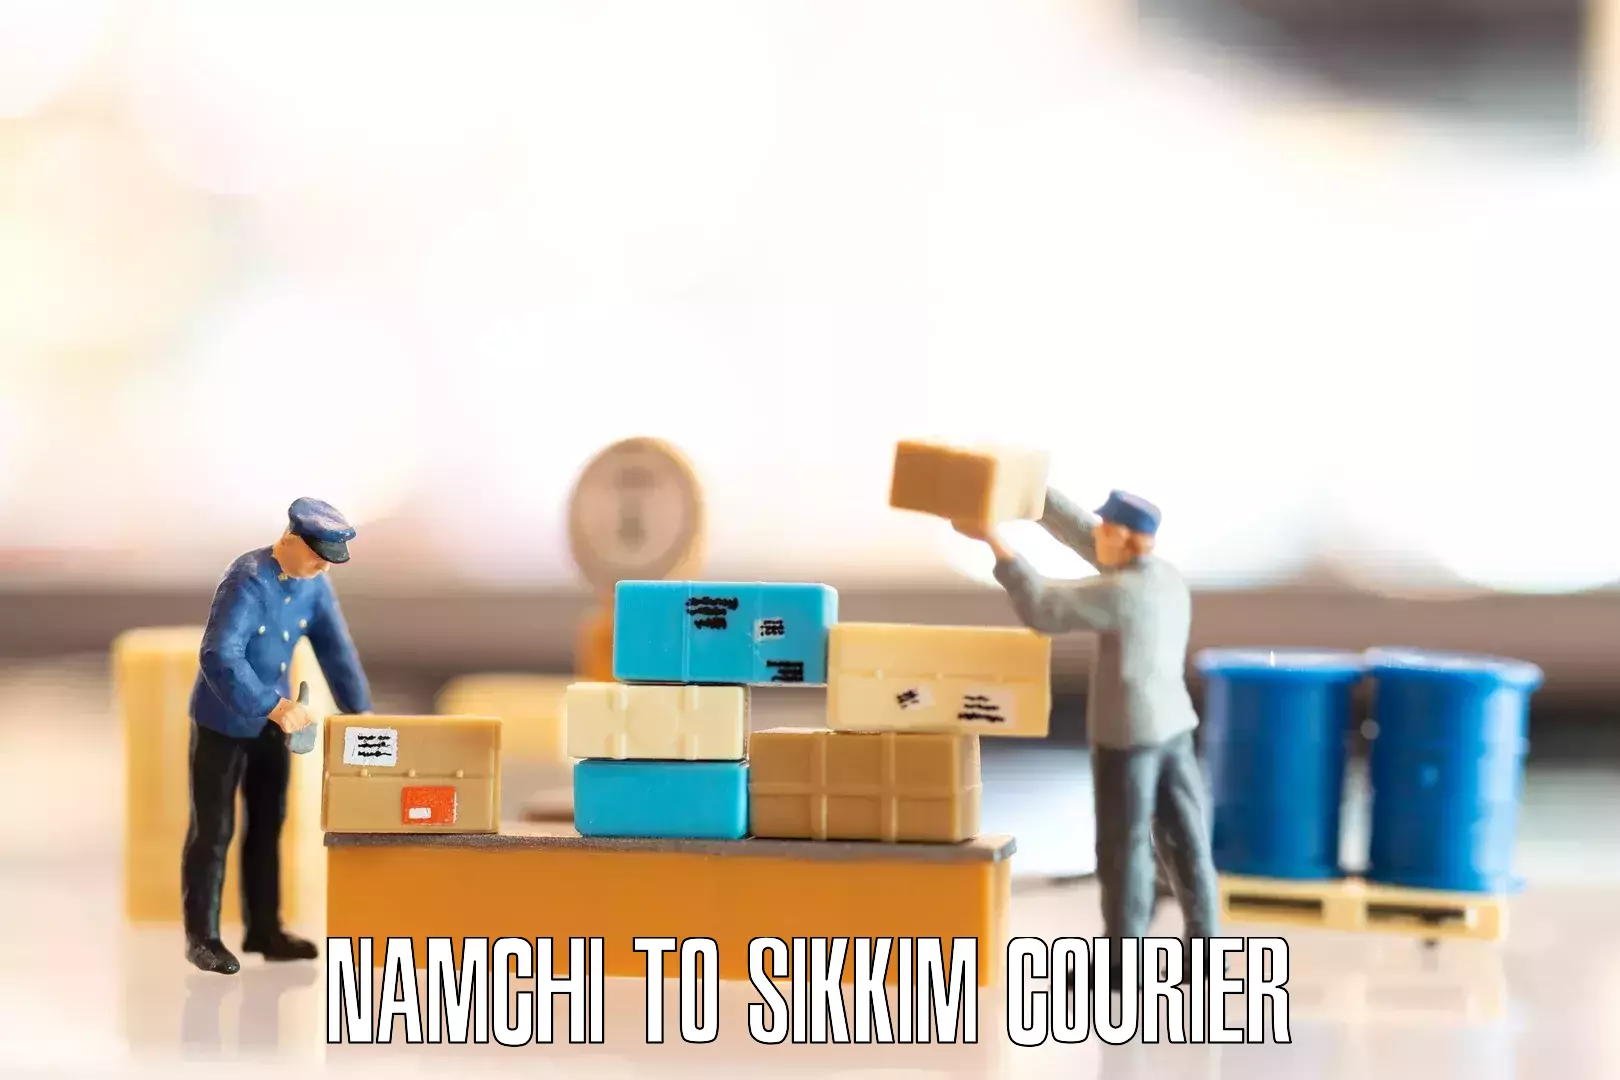 Professional moving company Namchi to Namchi